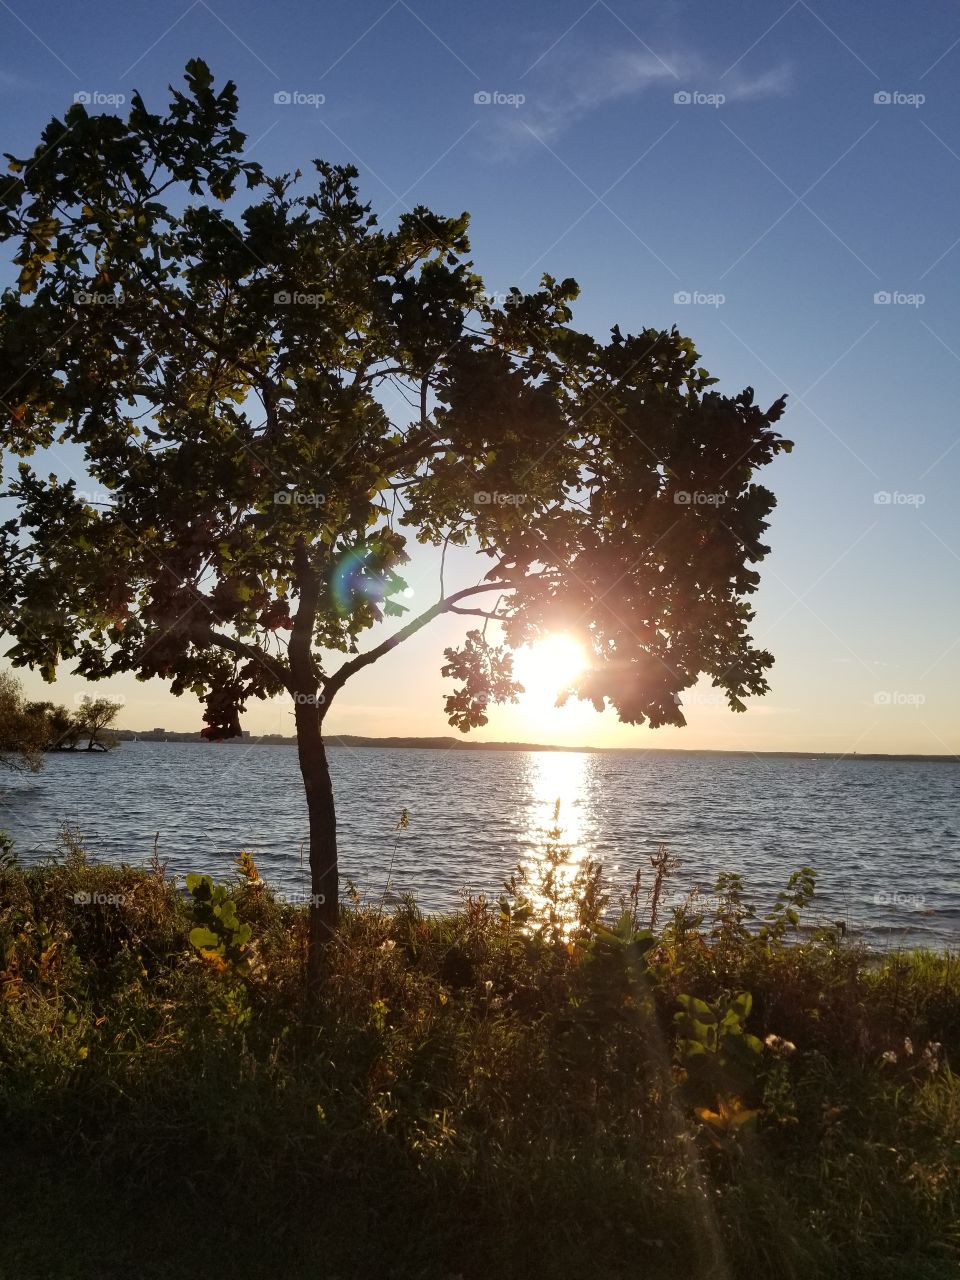 Sunset Near the Lake